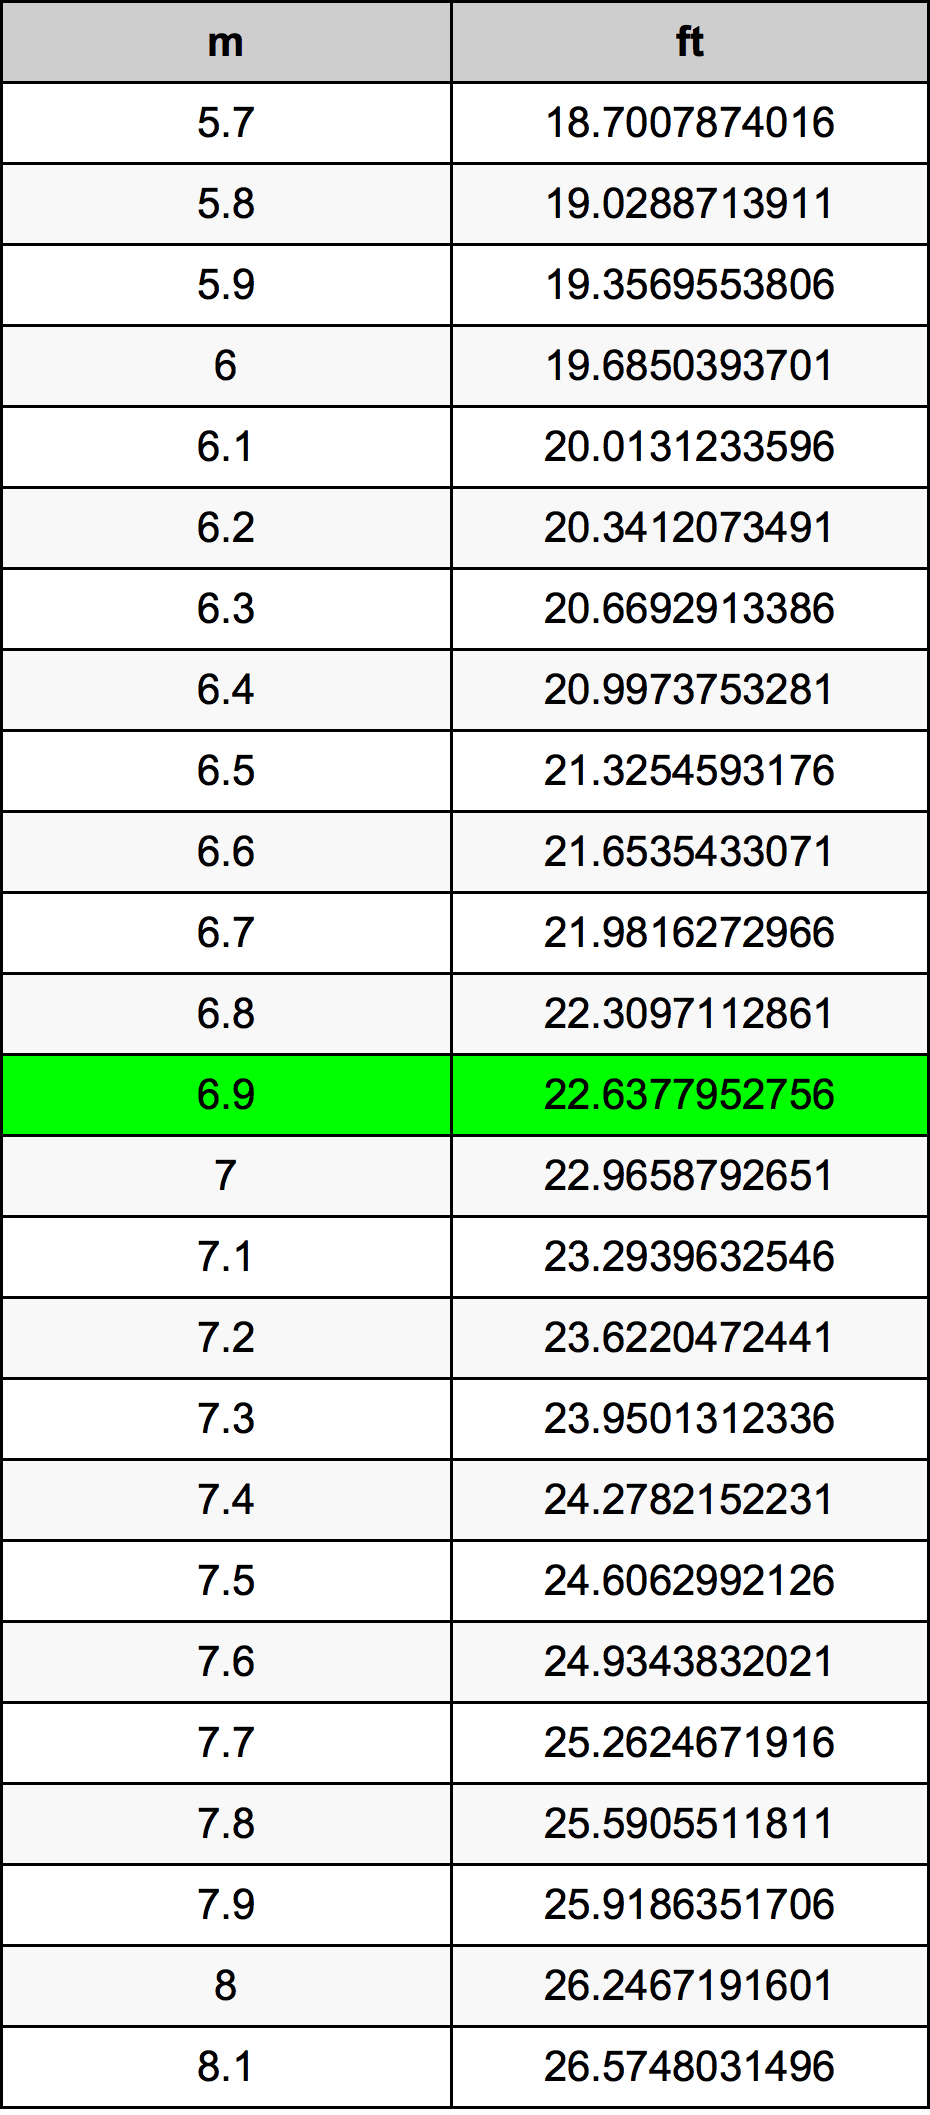 6.9 Metru tabelul de conversie